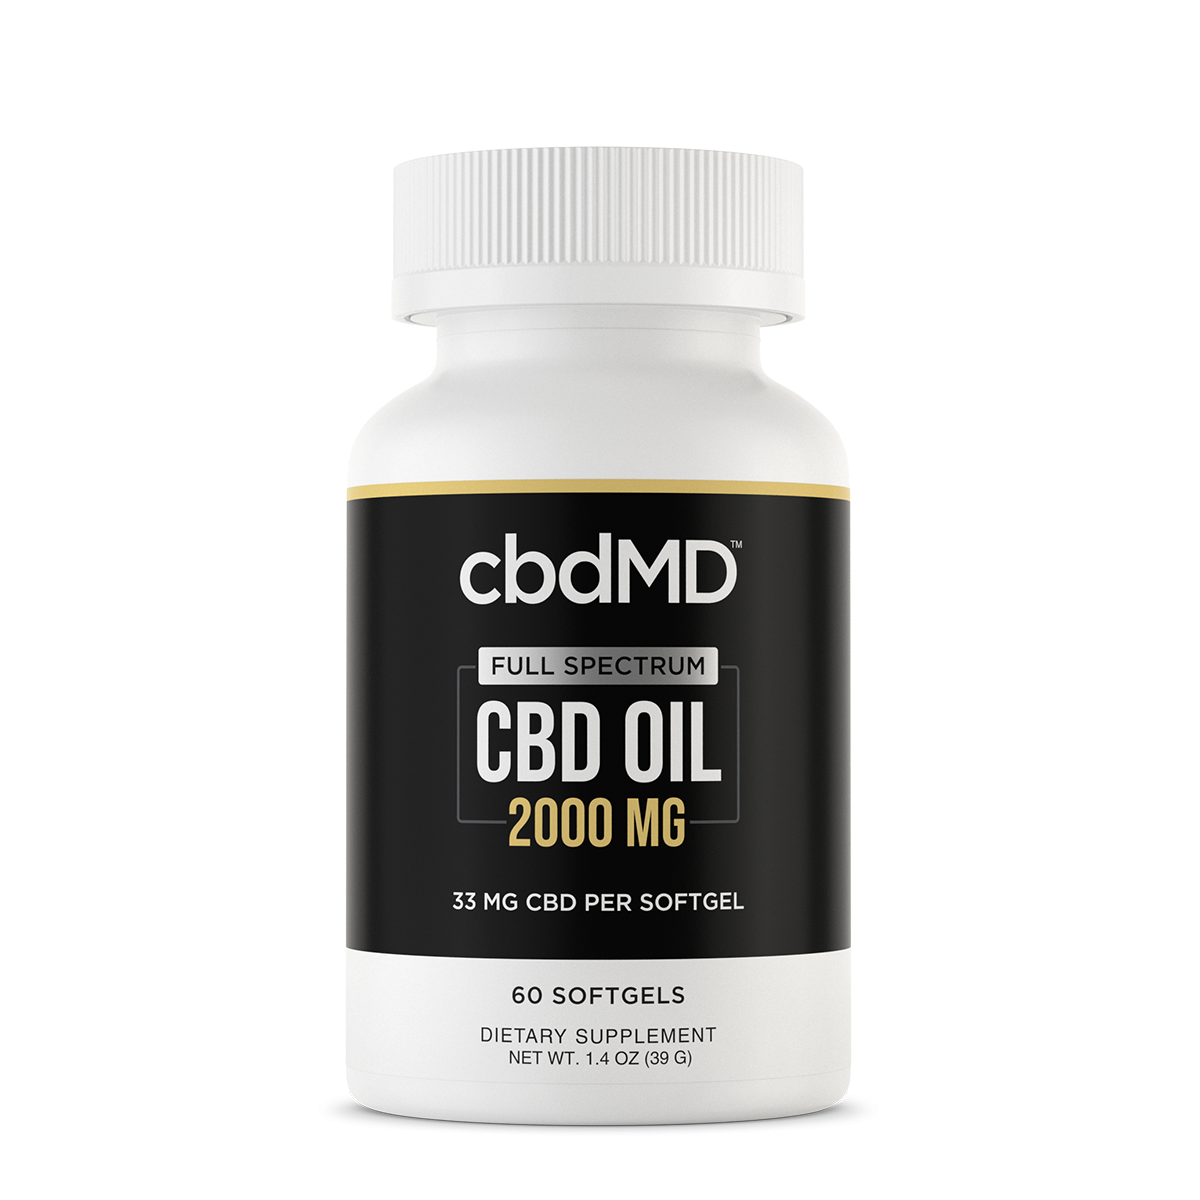 cbdMD Full Spectrum CBD Oil Softgels